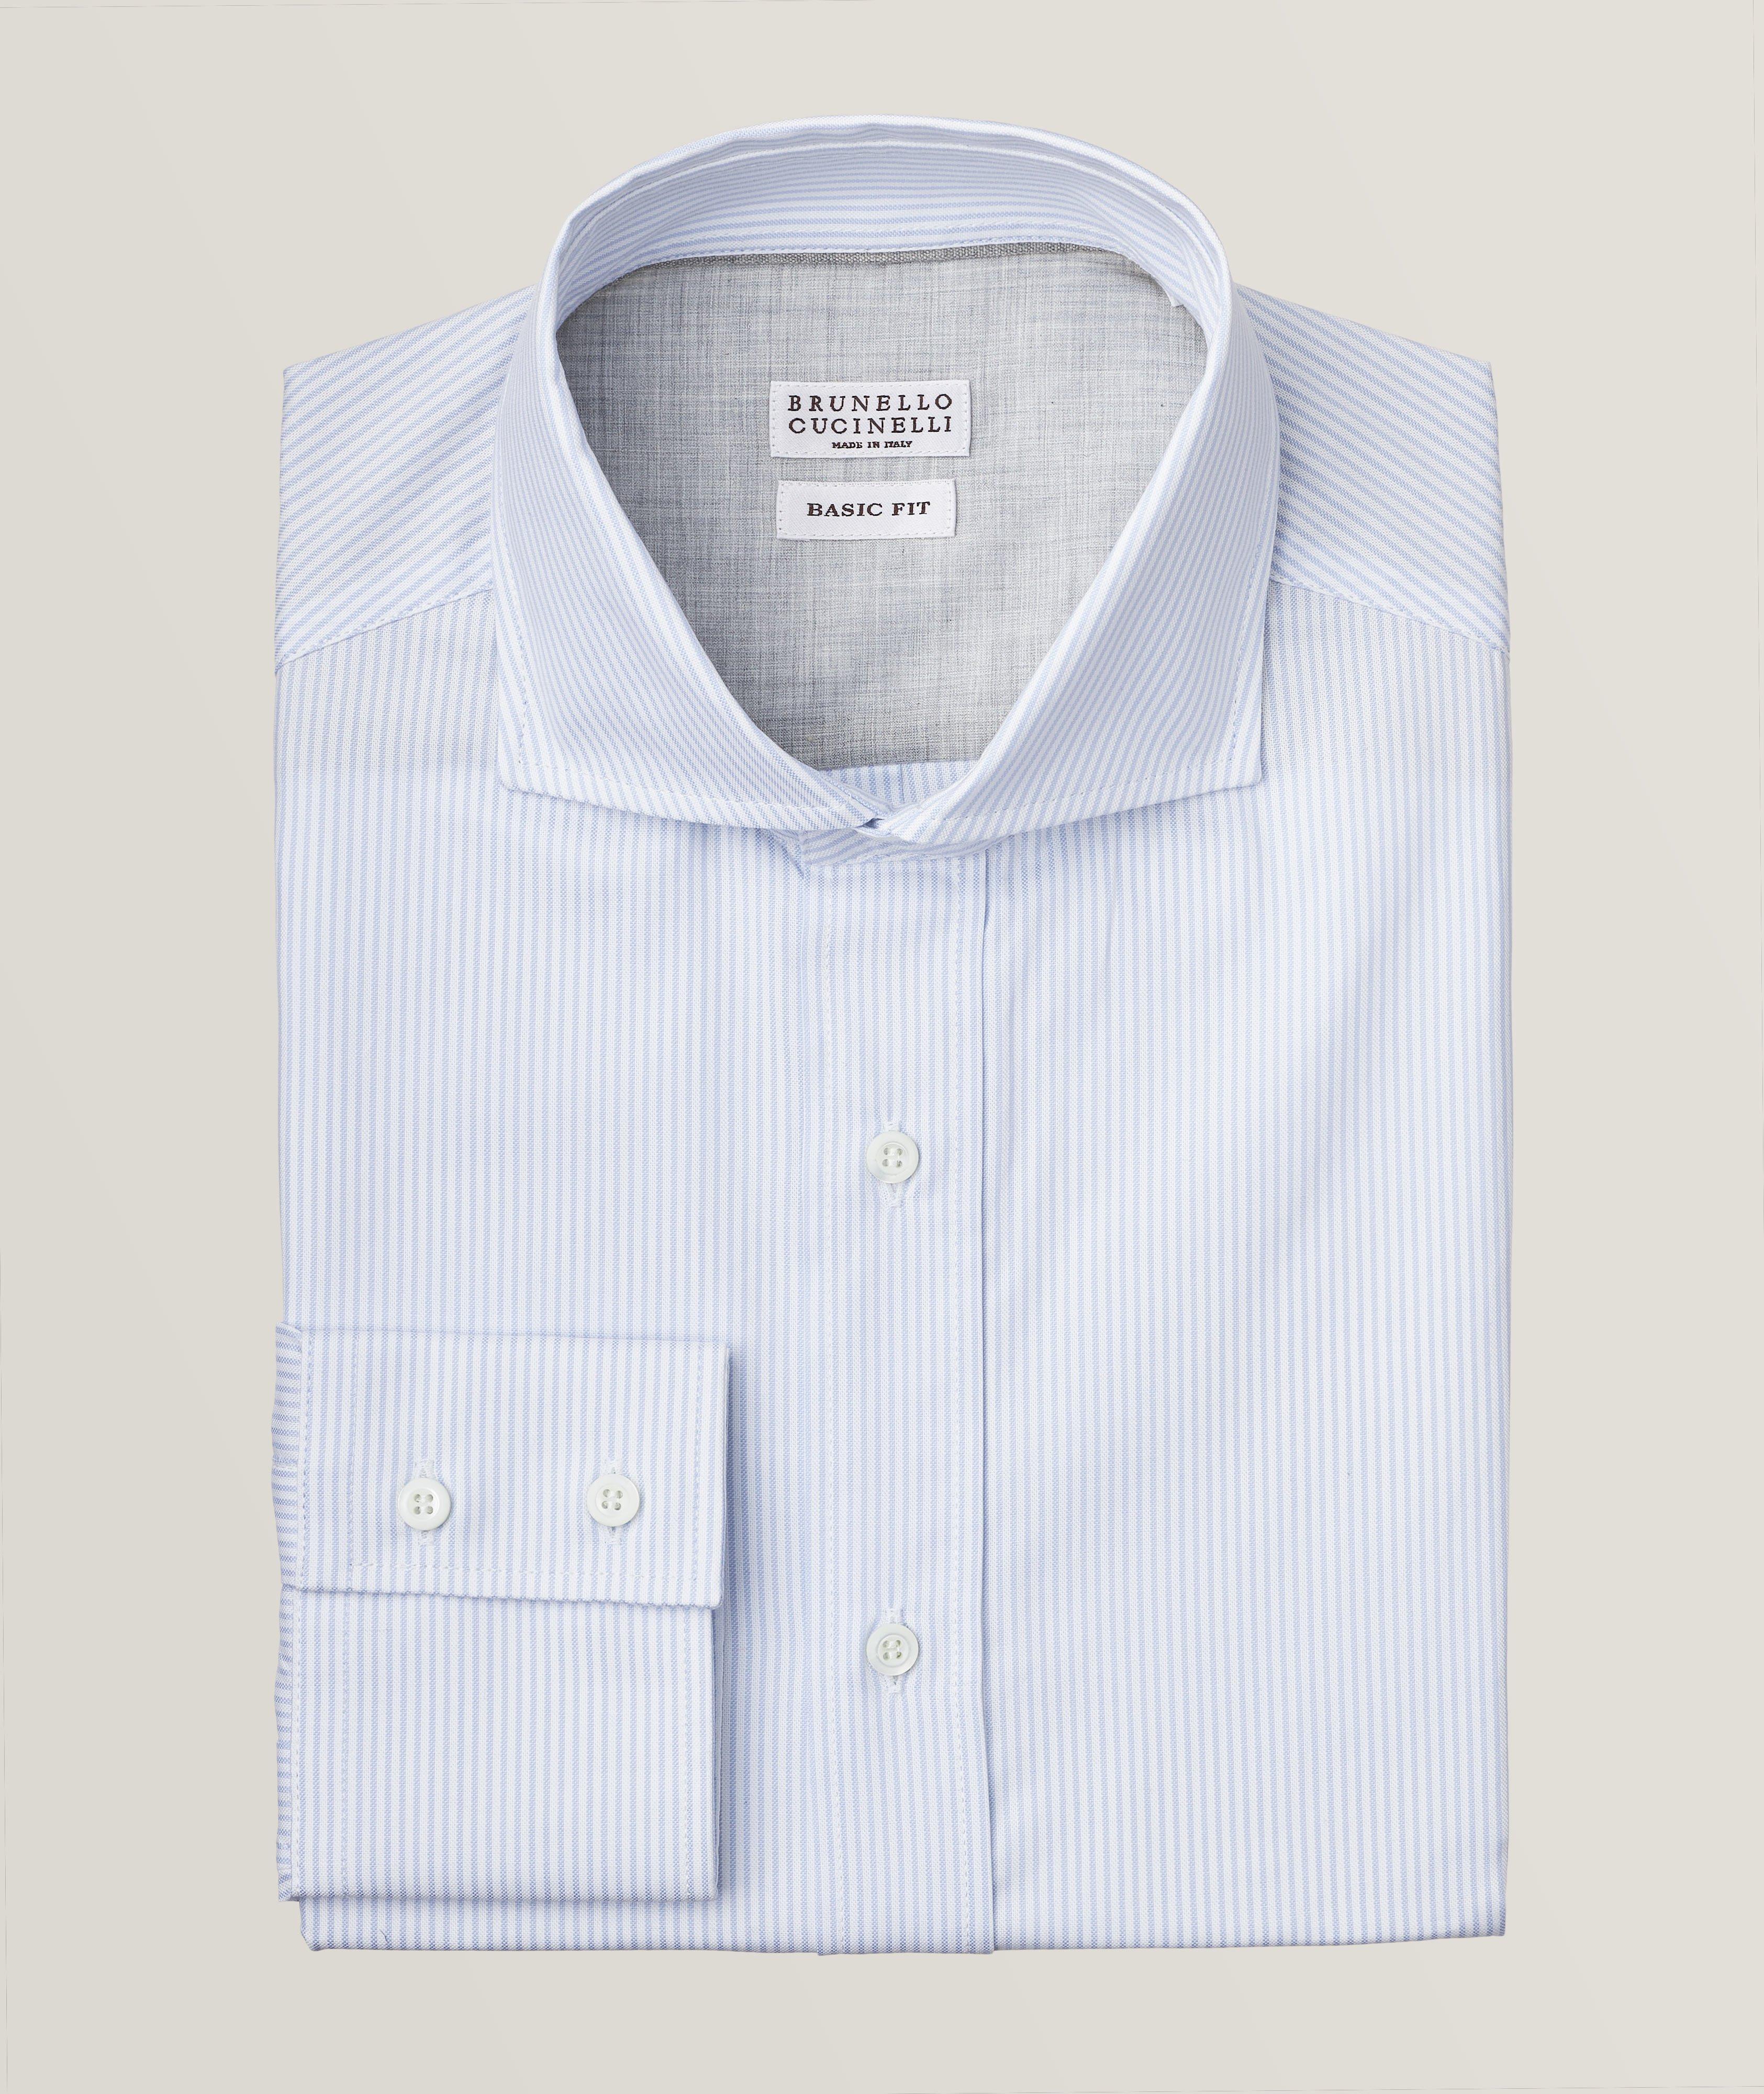 Brunello Cucinelli Pinstripe Cotton Oxford Shirt | Sport Shirts | Harry ...